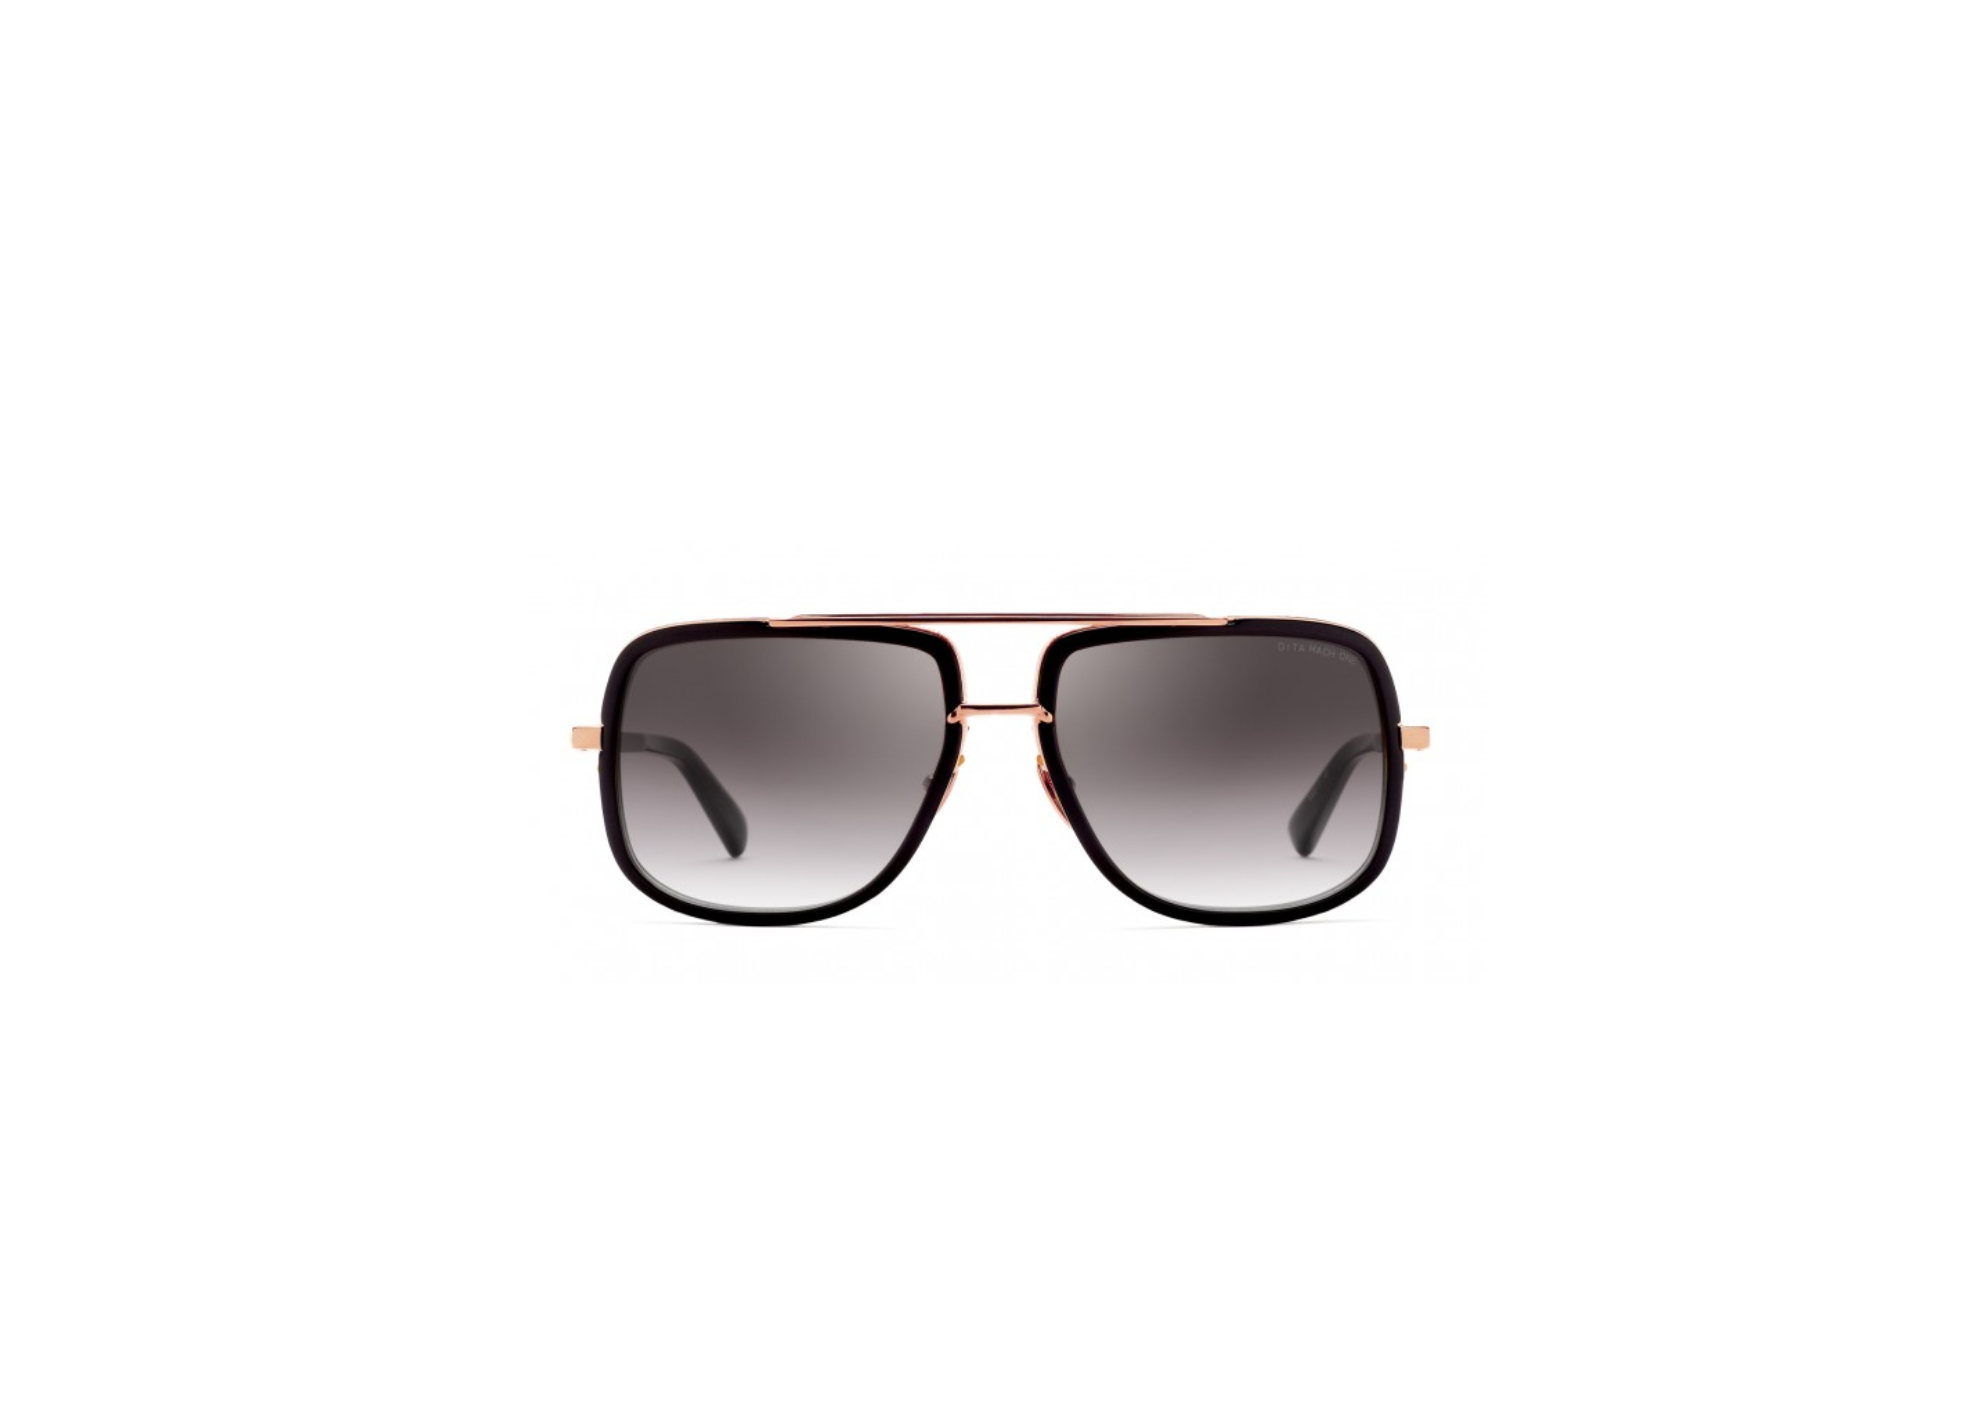 Men's sunglasses Dita, Mach one titanium » Onlineauctionmaster.com